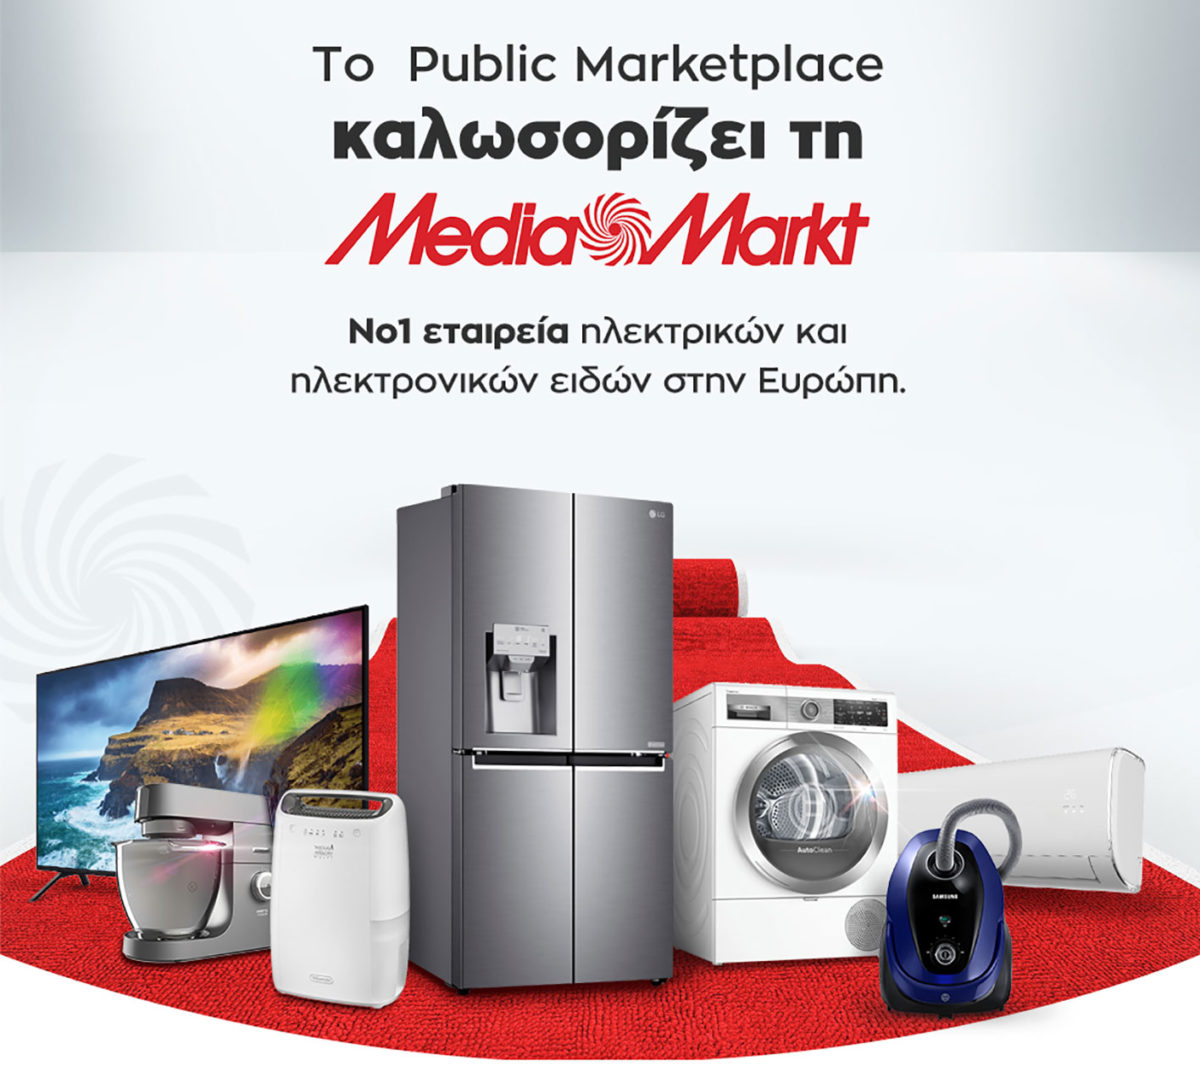 Με μεγάλες προσφορές καλωσορίζει η Public τη MediaMarkt